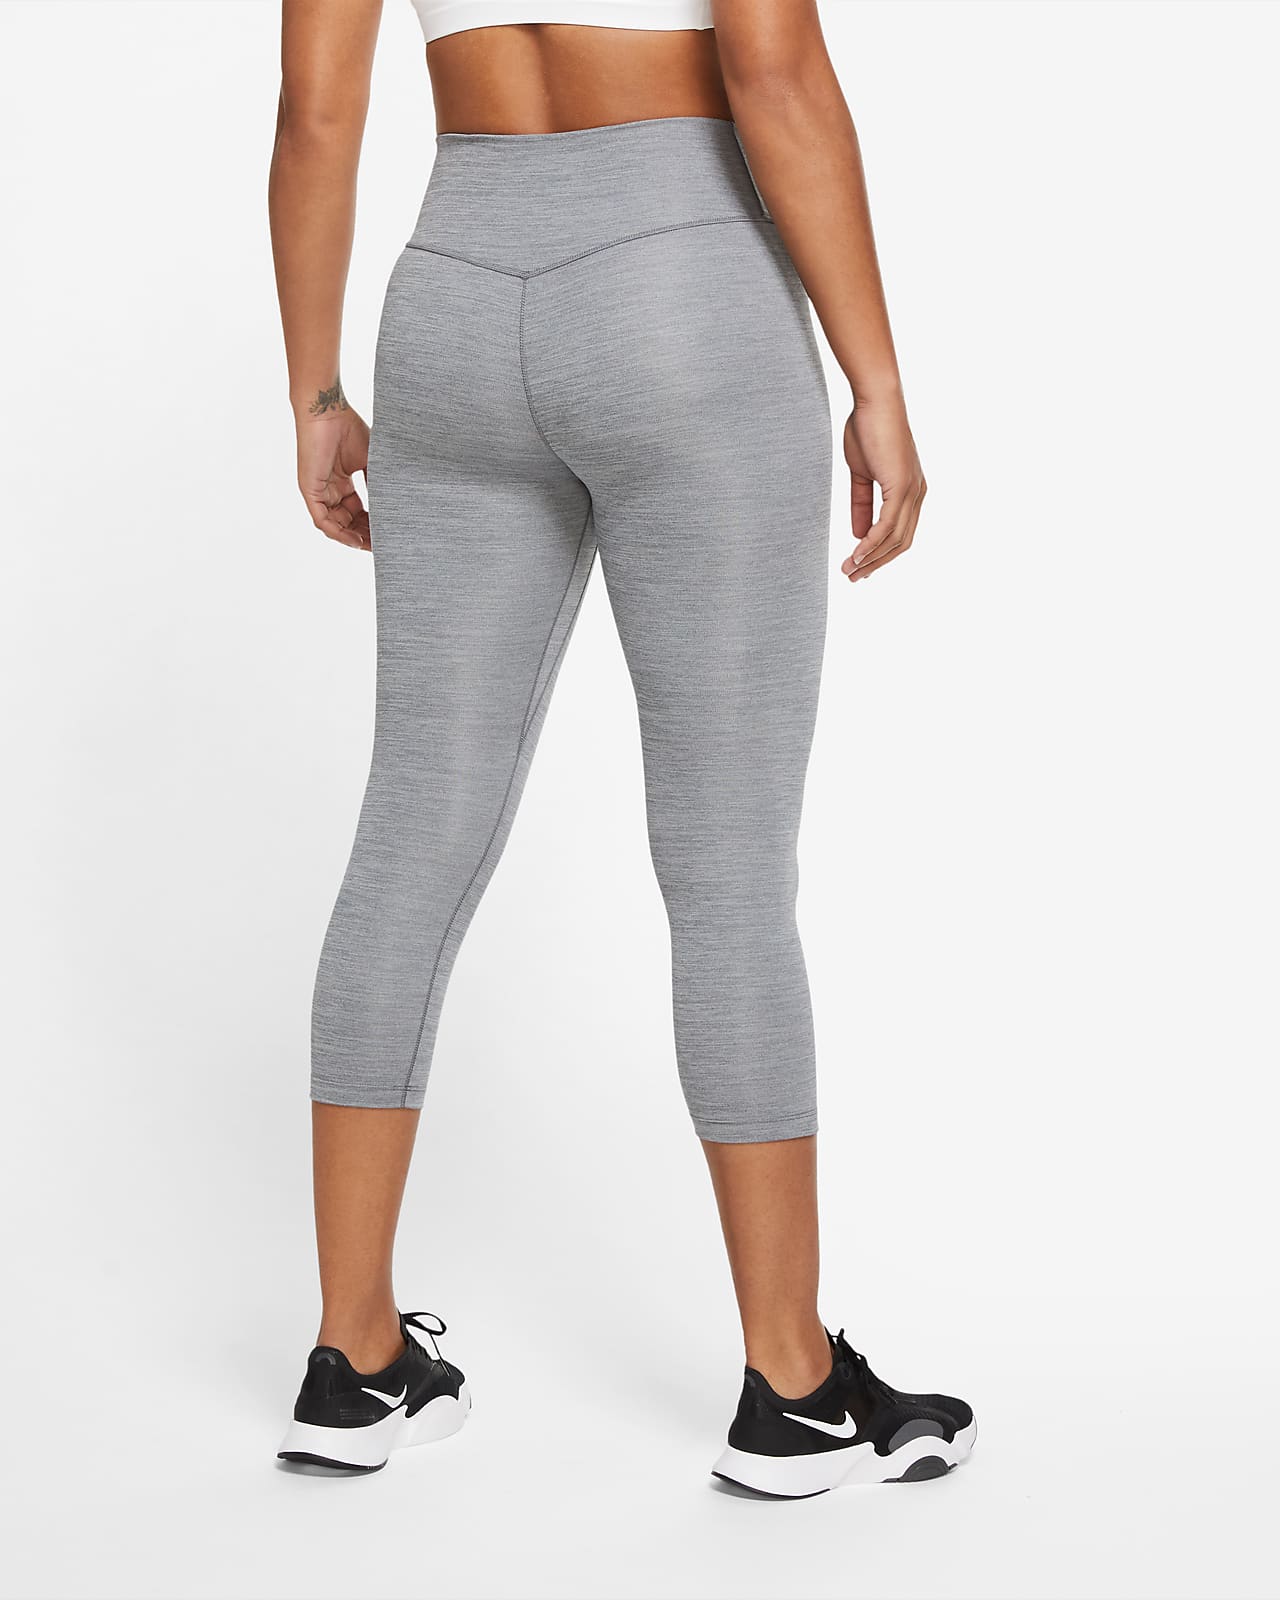 Nike One Women's Mid-Rise Capri Leggings. Nike.com